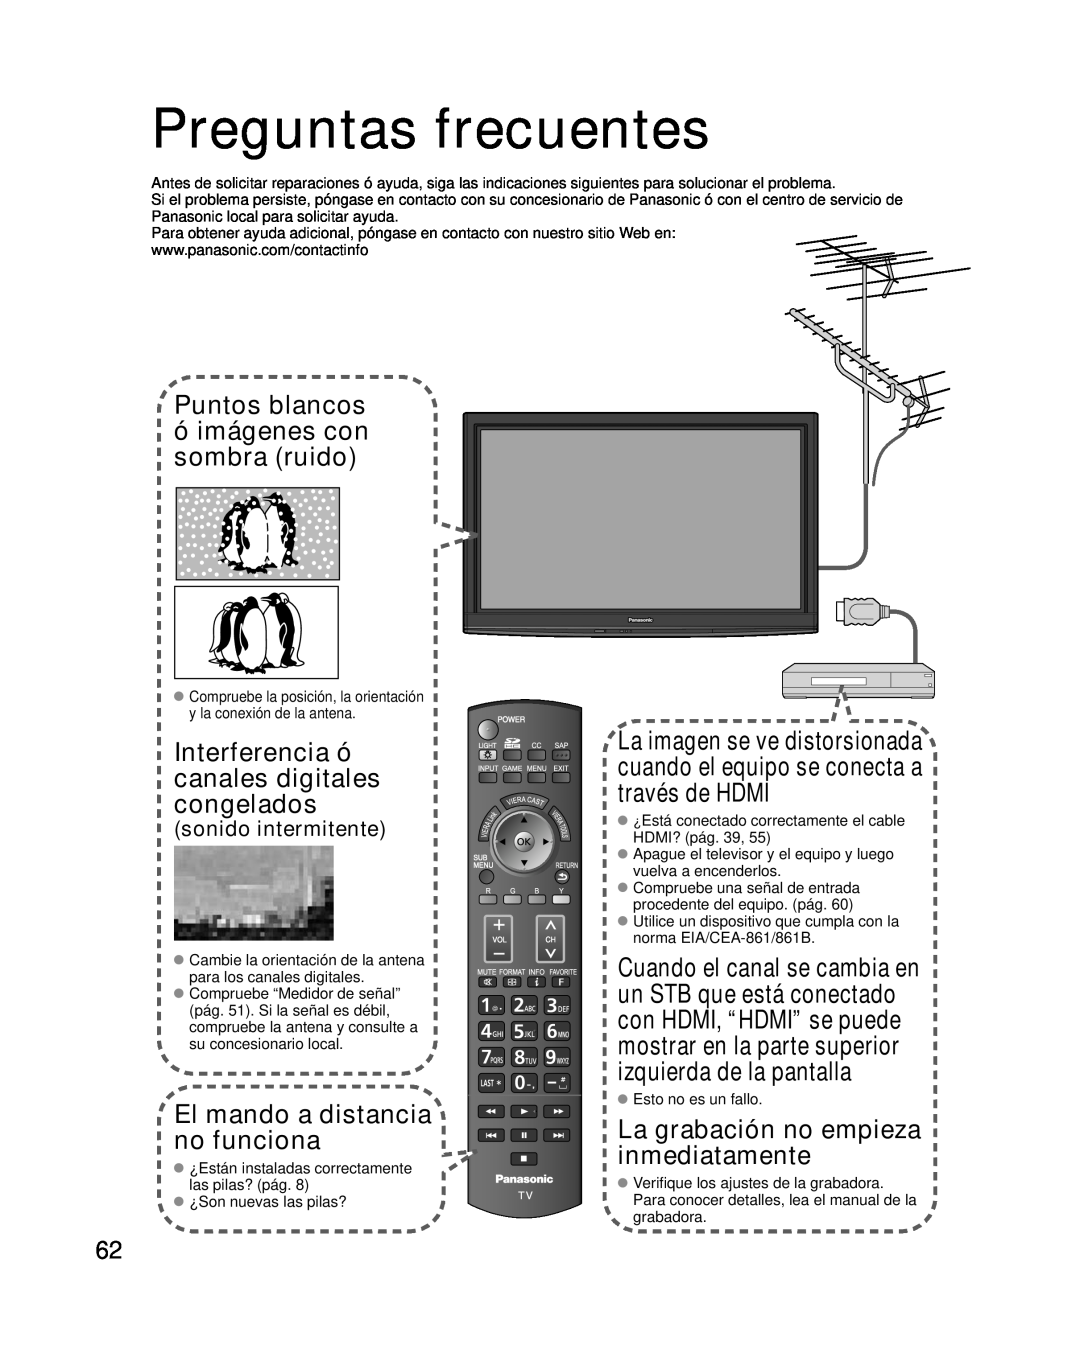 Panasonic TC-P46G10 Preguntas frecuentes, Puntos blancos, ó imágenes con sombra ruido, El mando a distancia no funciona 